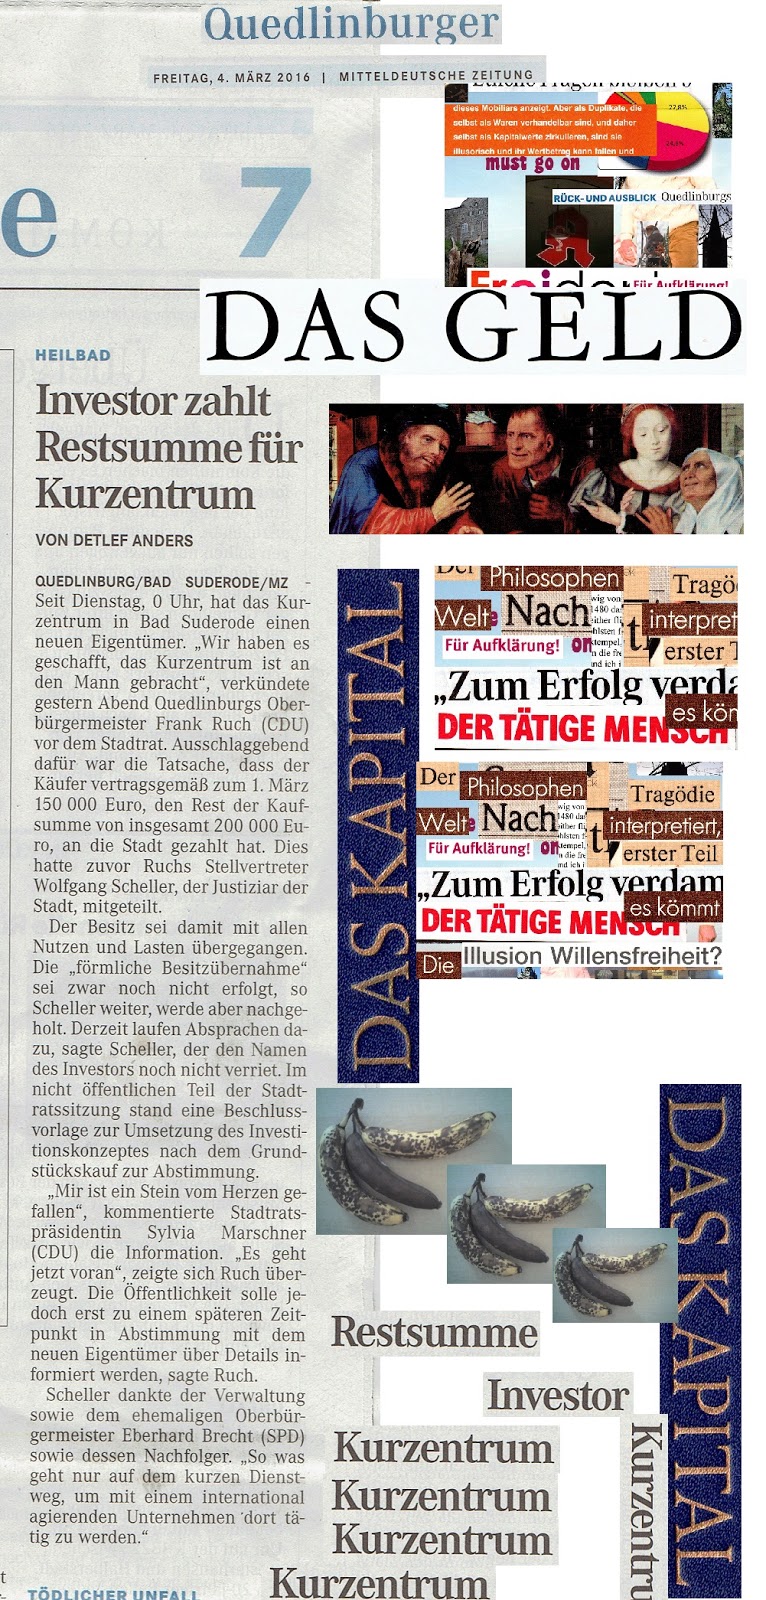 Der Rat der Stadt Quedlinburg wurde informiert und MZ berichtet heute auf Seite 7 darüber dass der „Investor… Restsumme für Kurzentrum“ zahlt